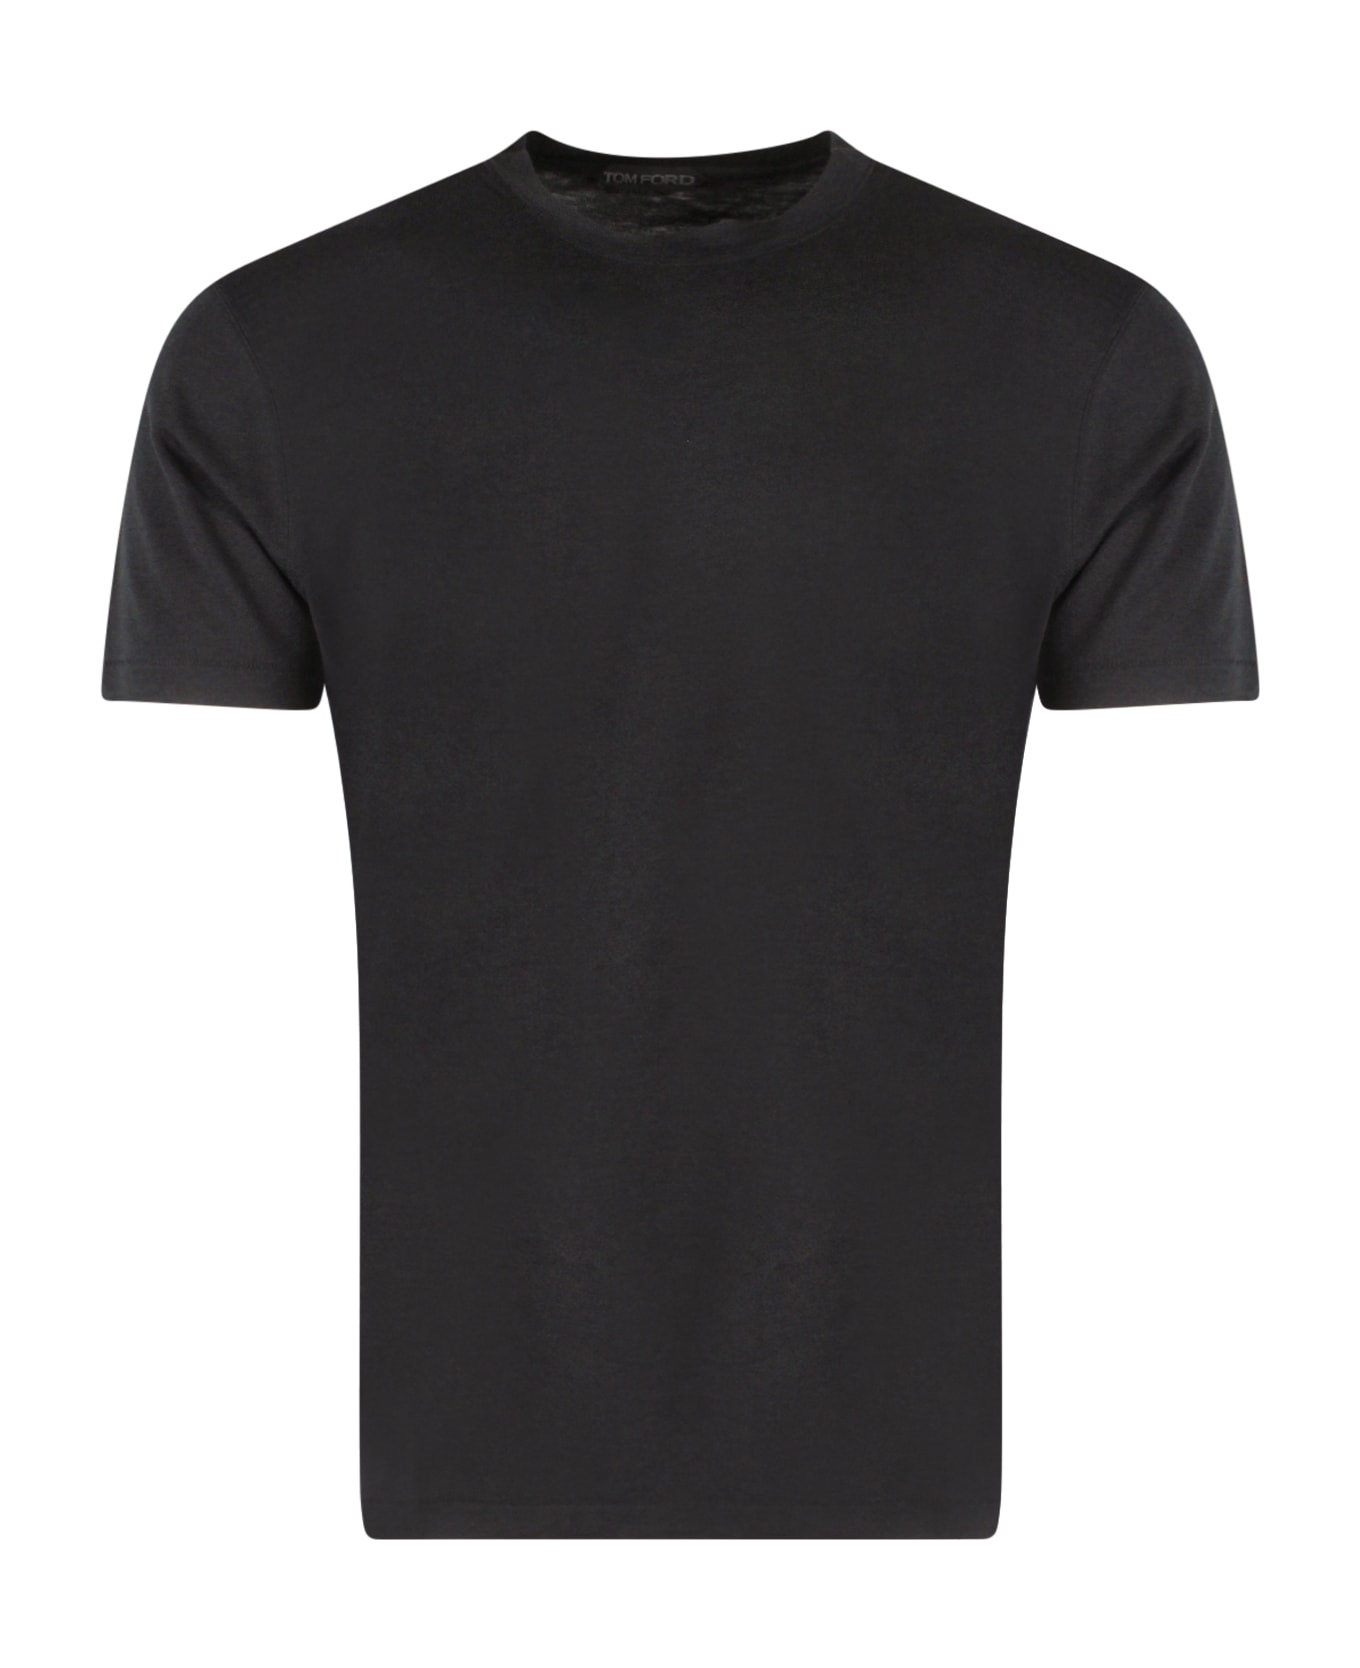 Tom Ford T-shirt - BLACK